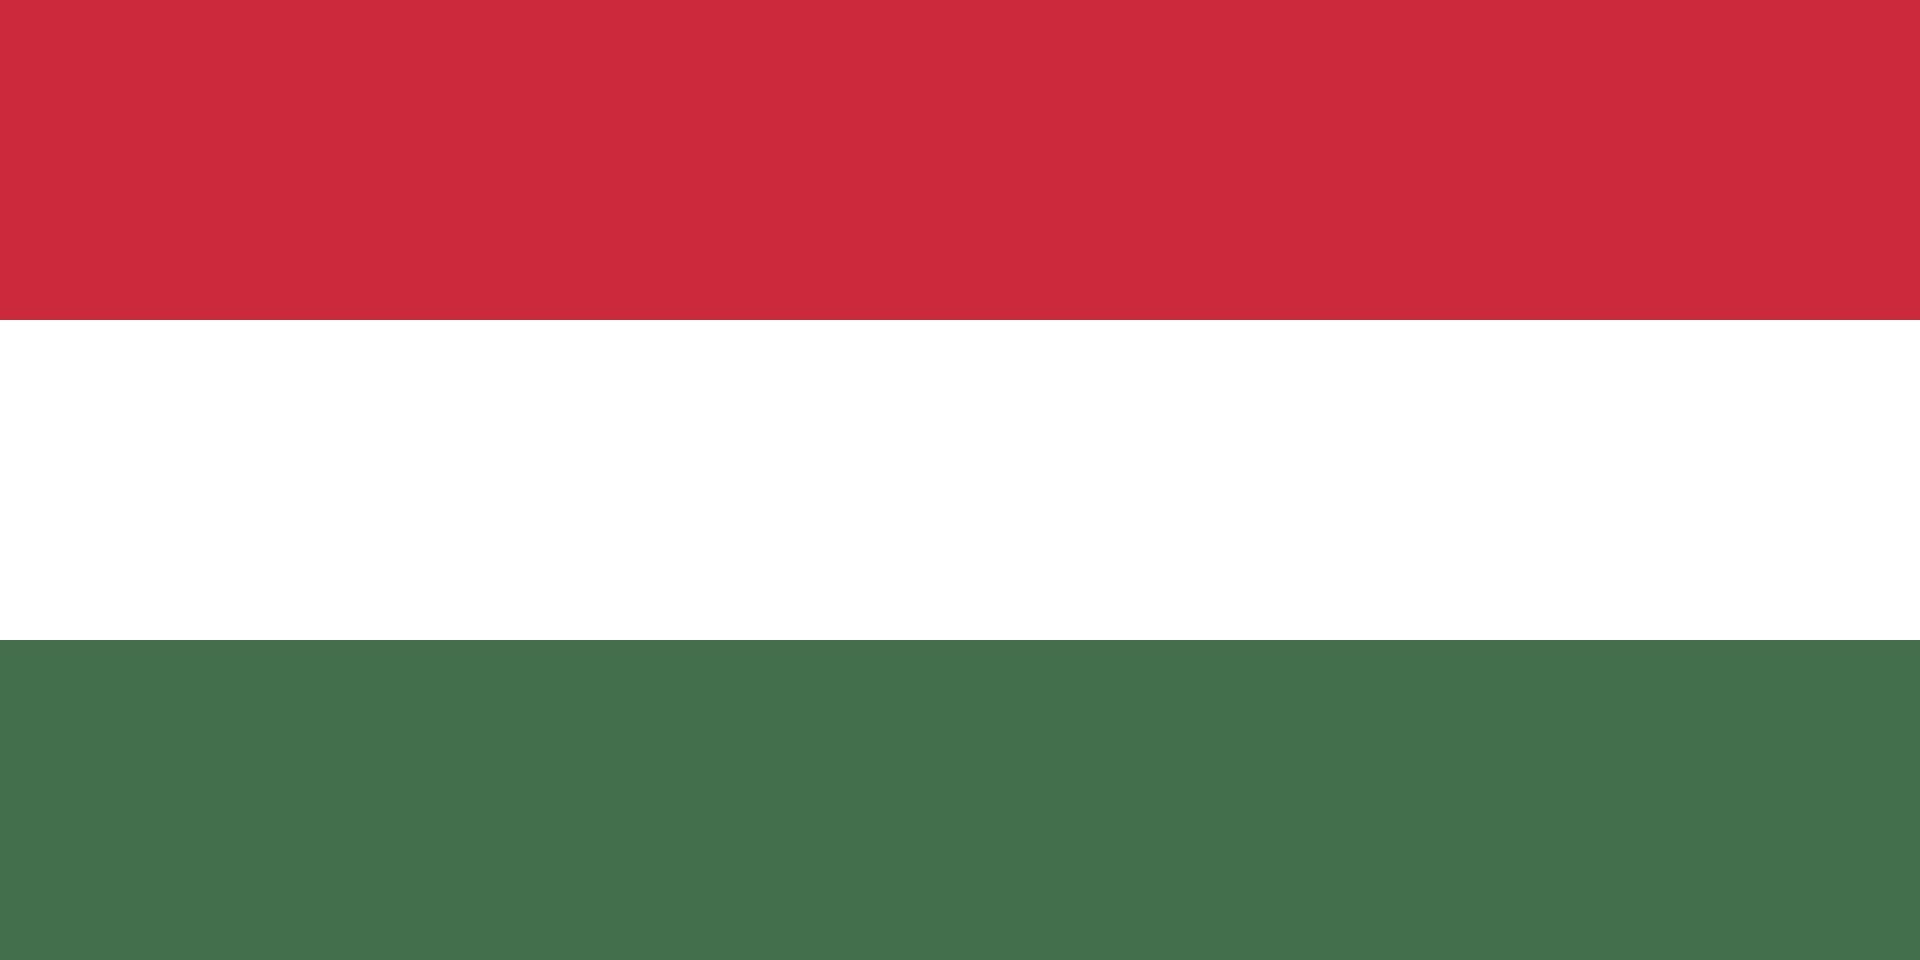 ハンガリー国旗の色の意味とは？